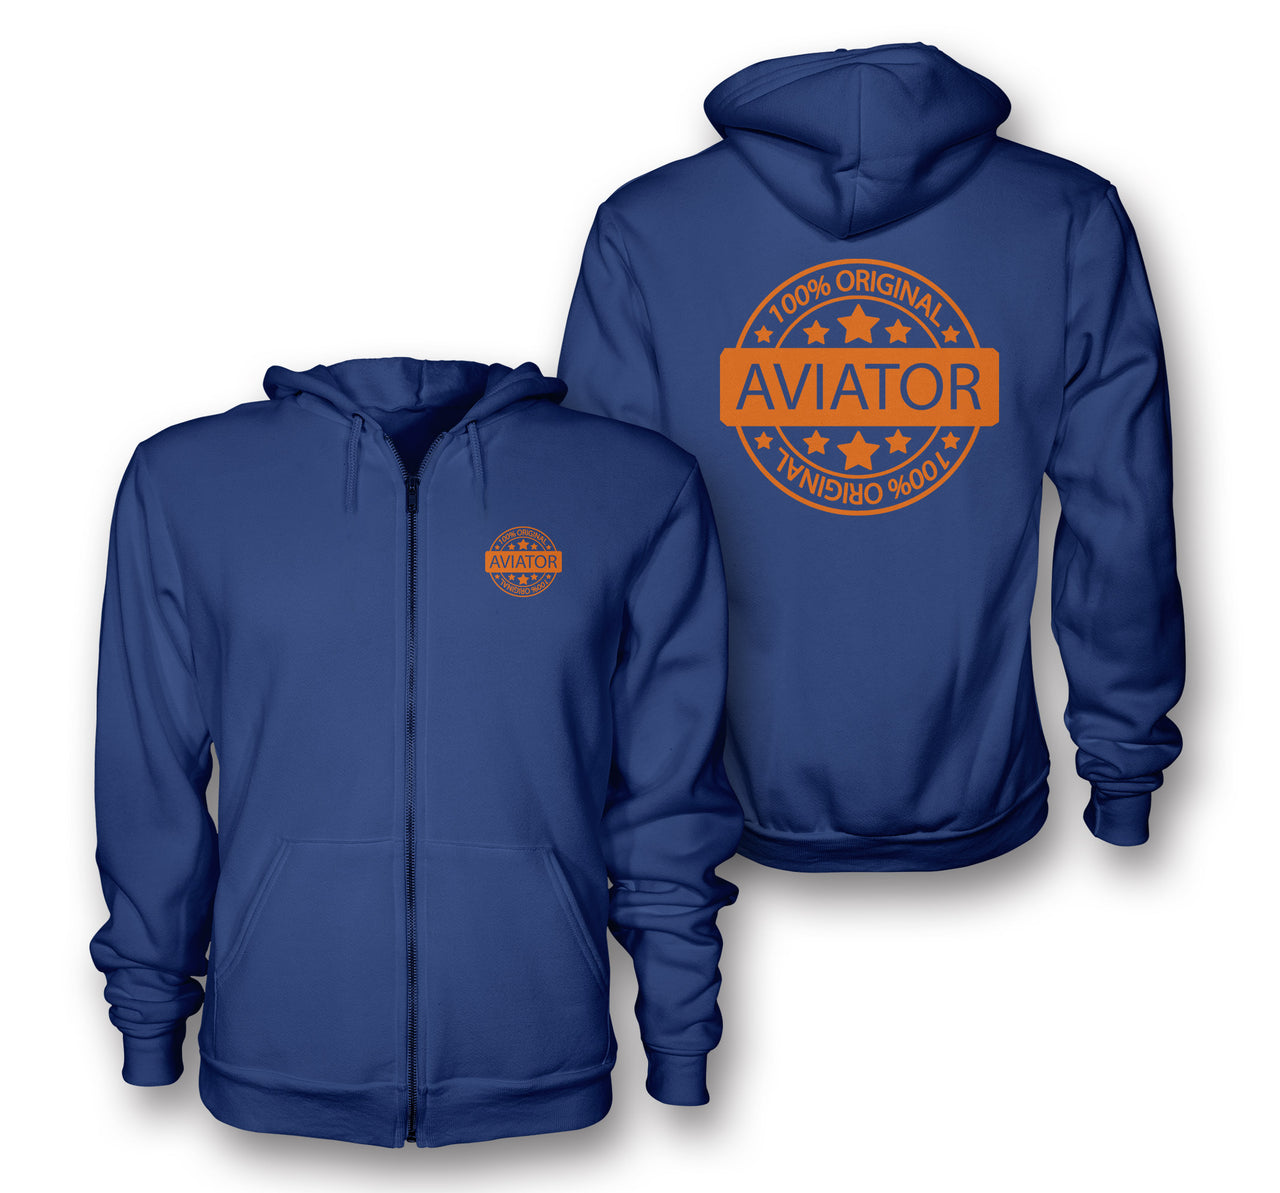 %100 Original Aviator Designed Zipped Hoodies